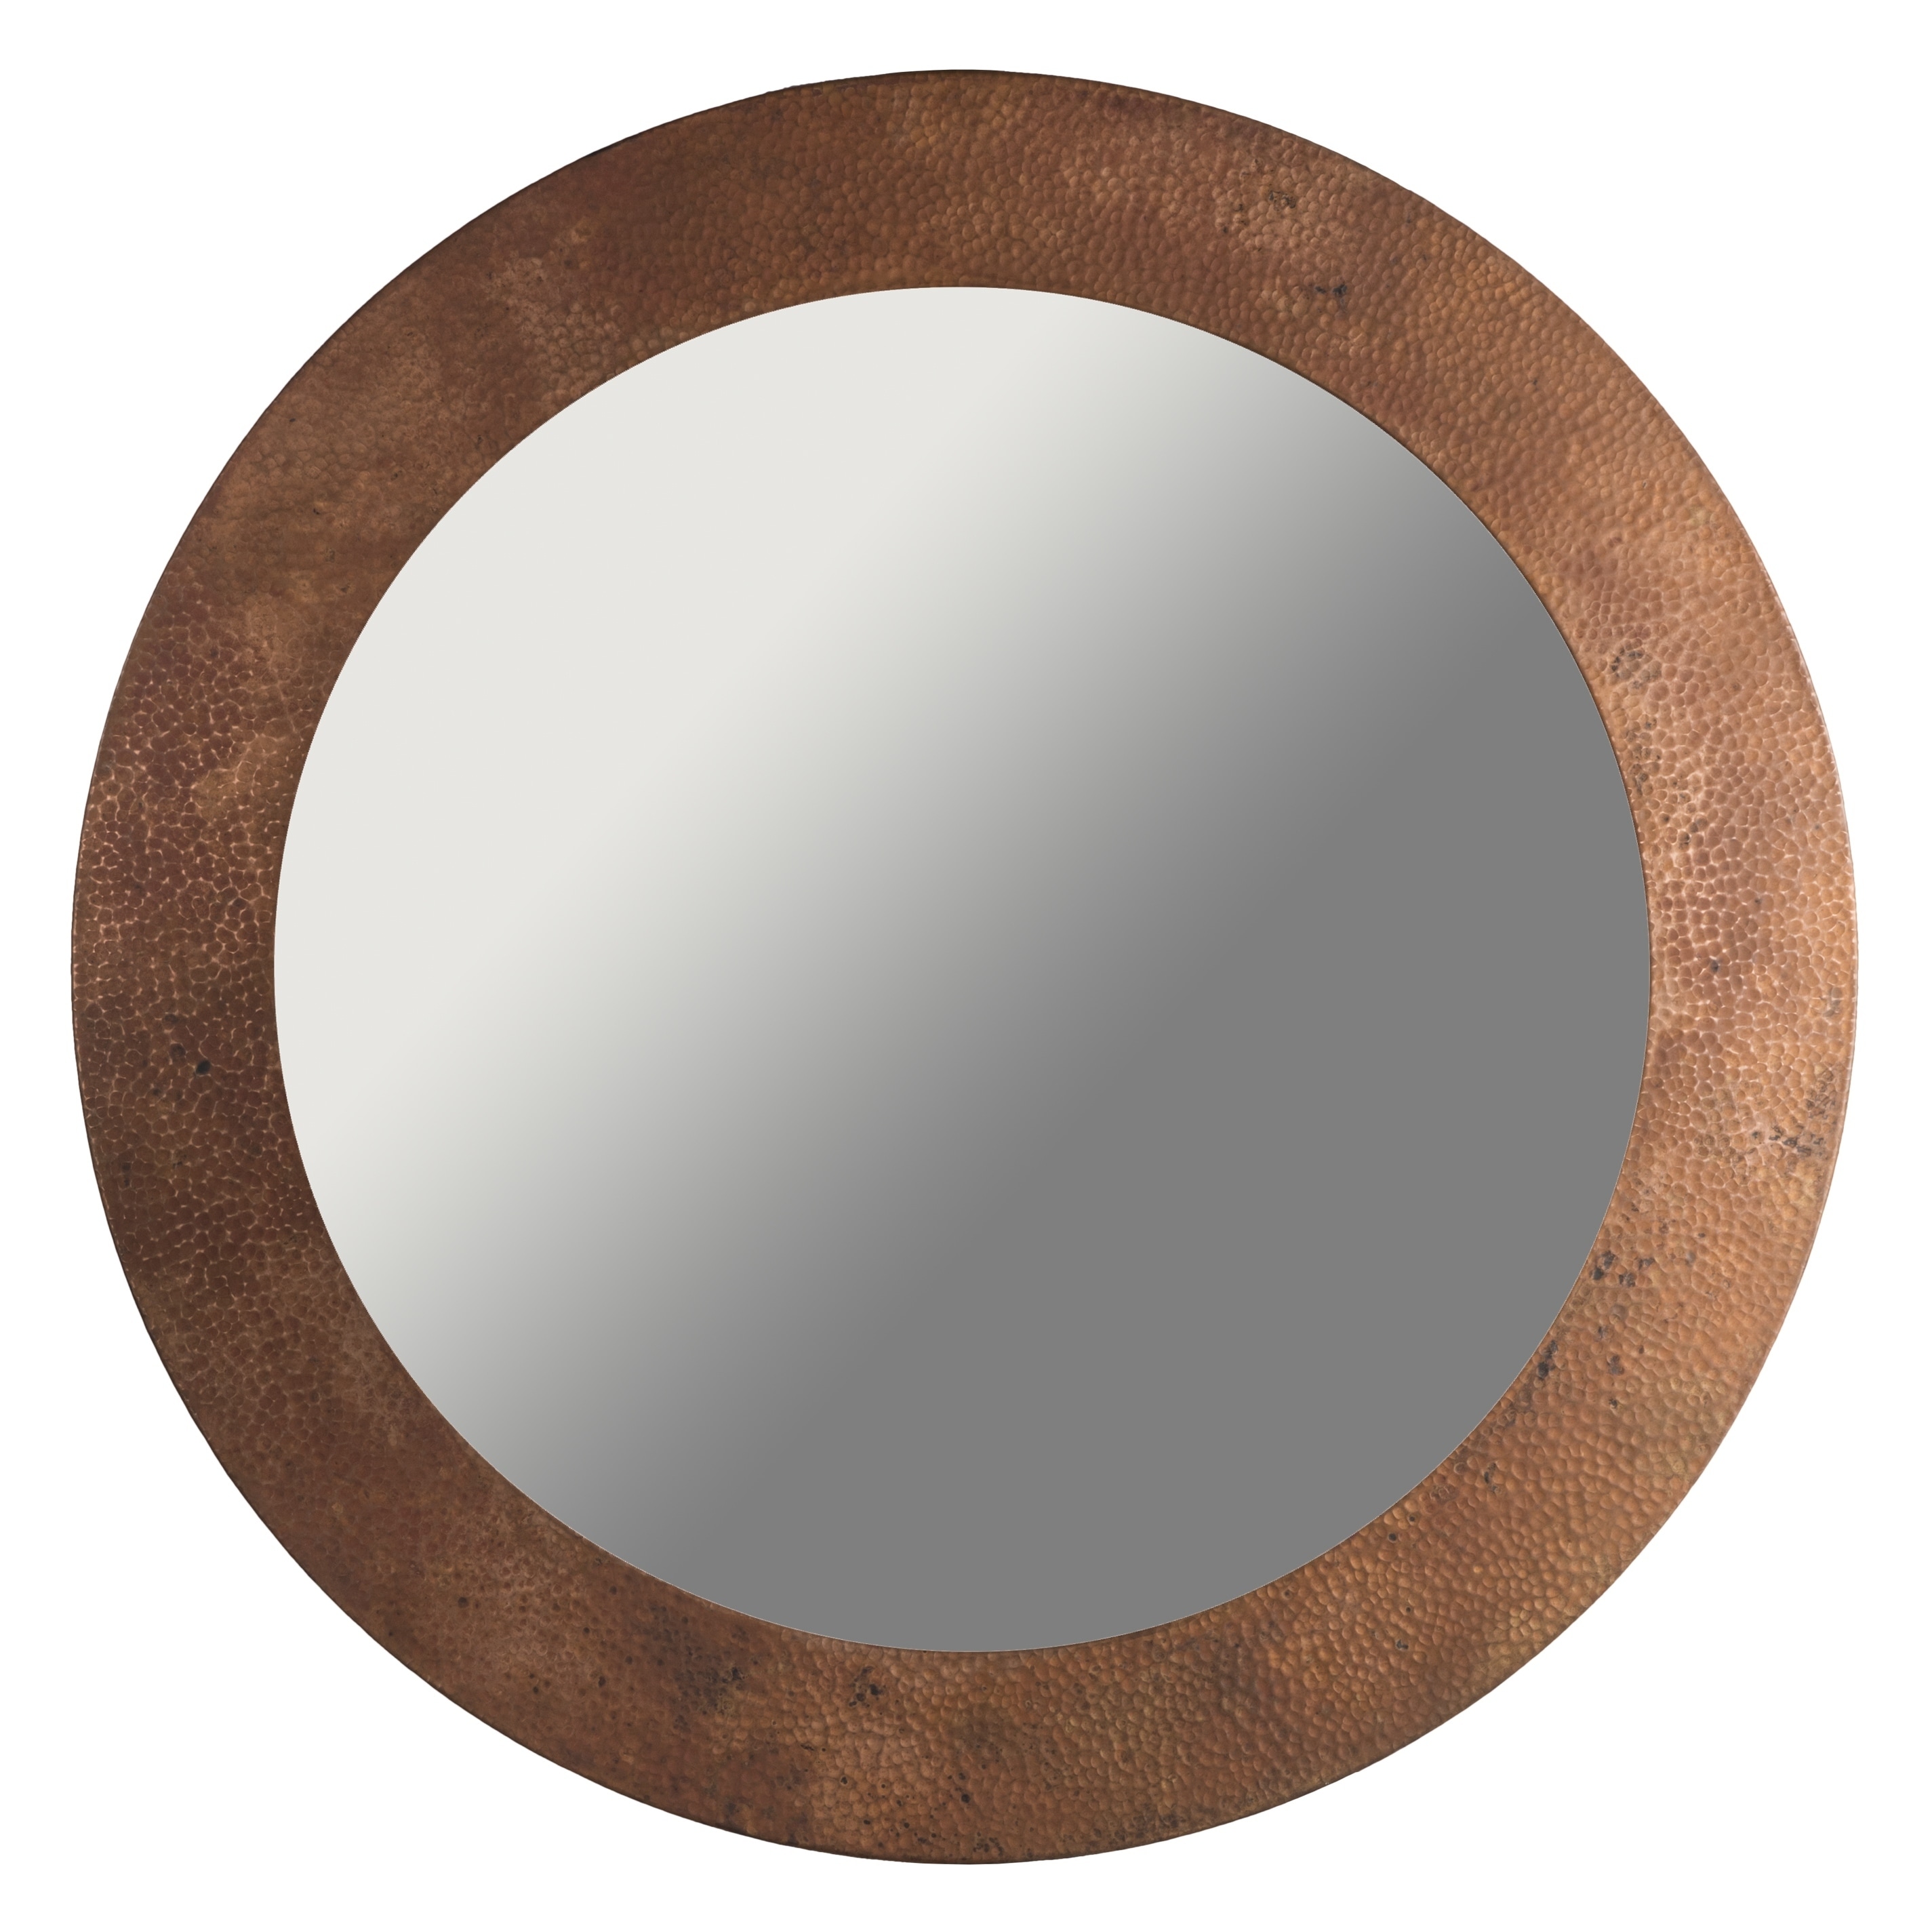 34-inch Round Hammered Antique Copper Mirror (OS-MRAC34) - Antique Brown